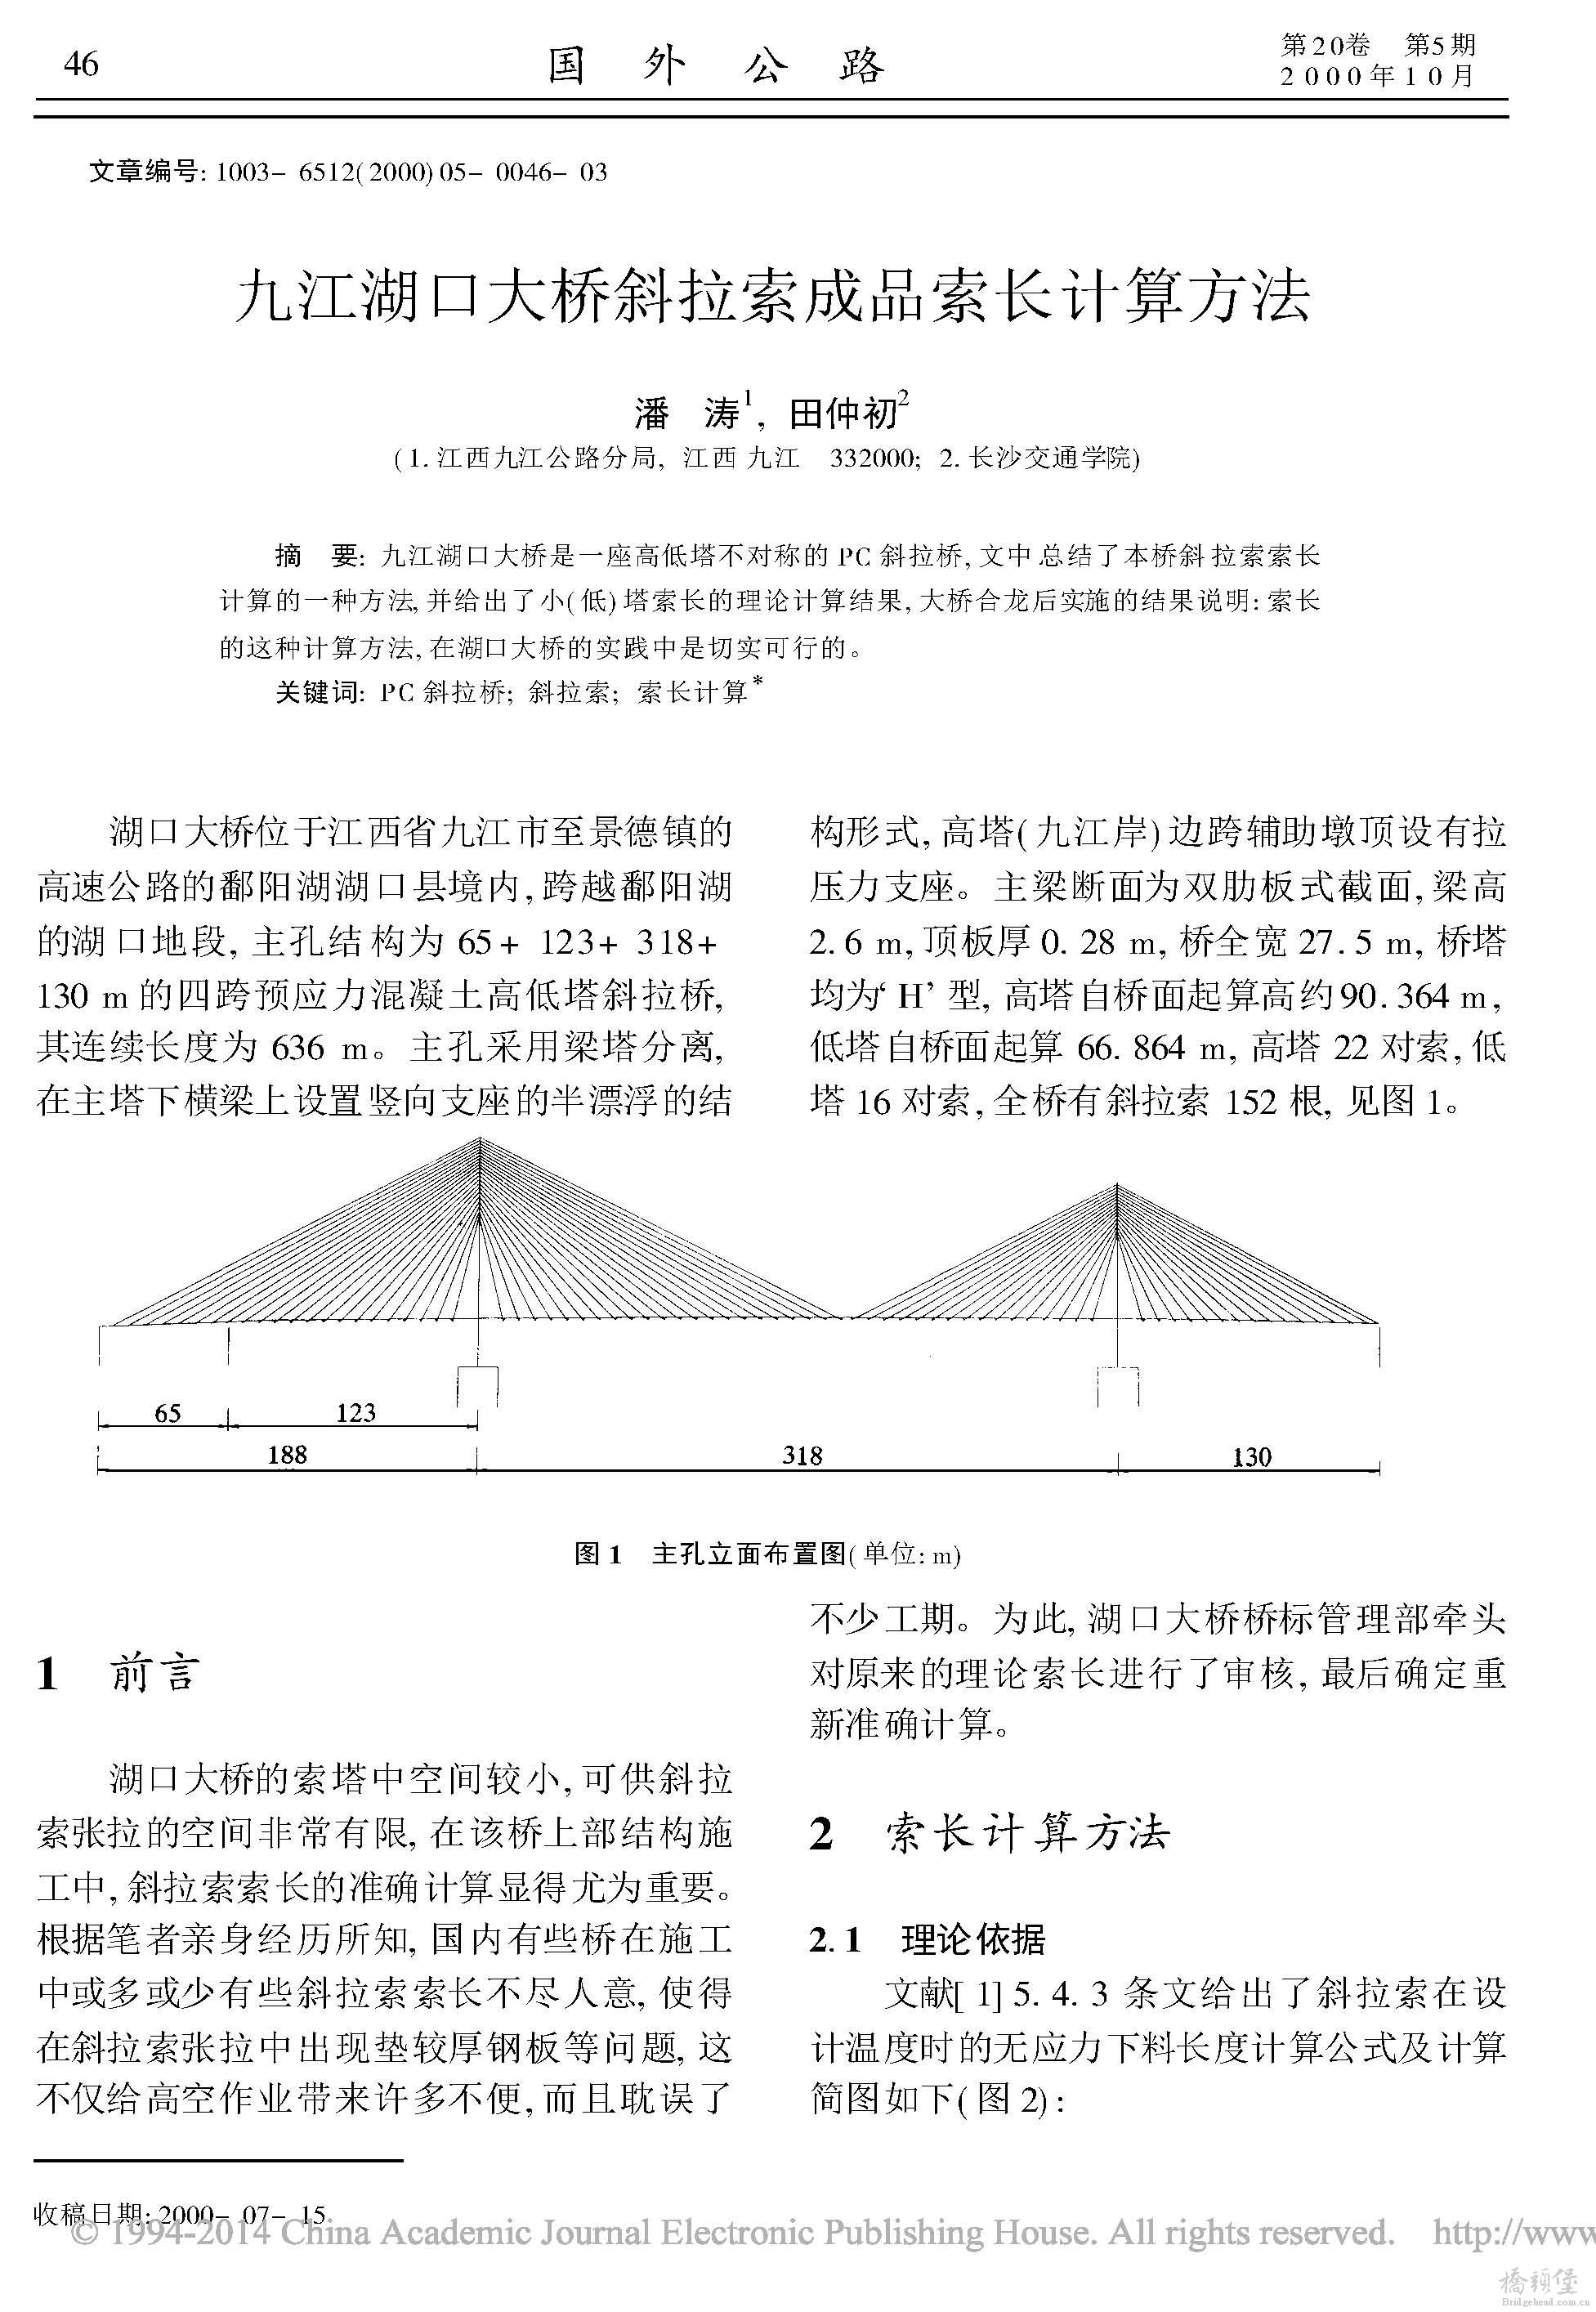 九江湖口大桥斜拉索成品索长计算方法_页面_1.jpg